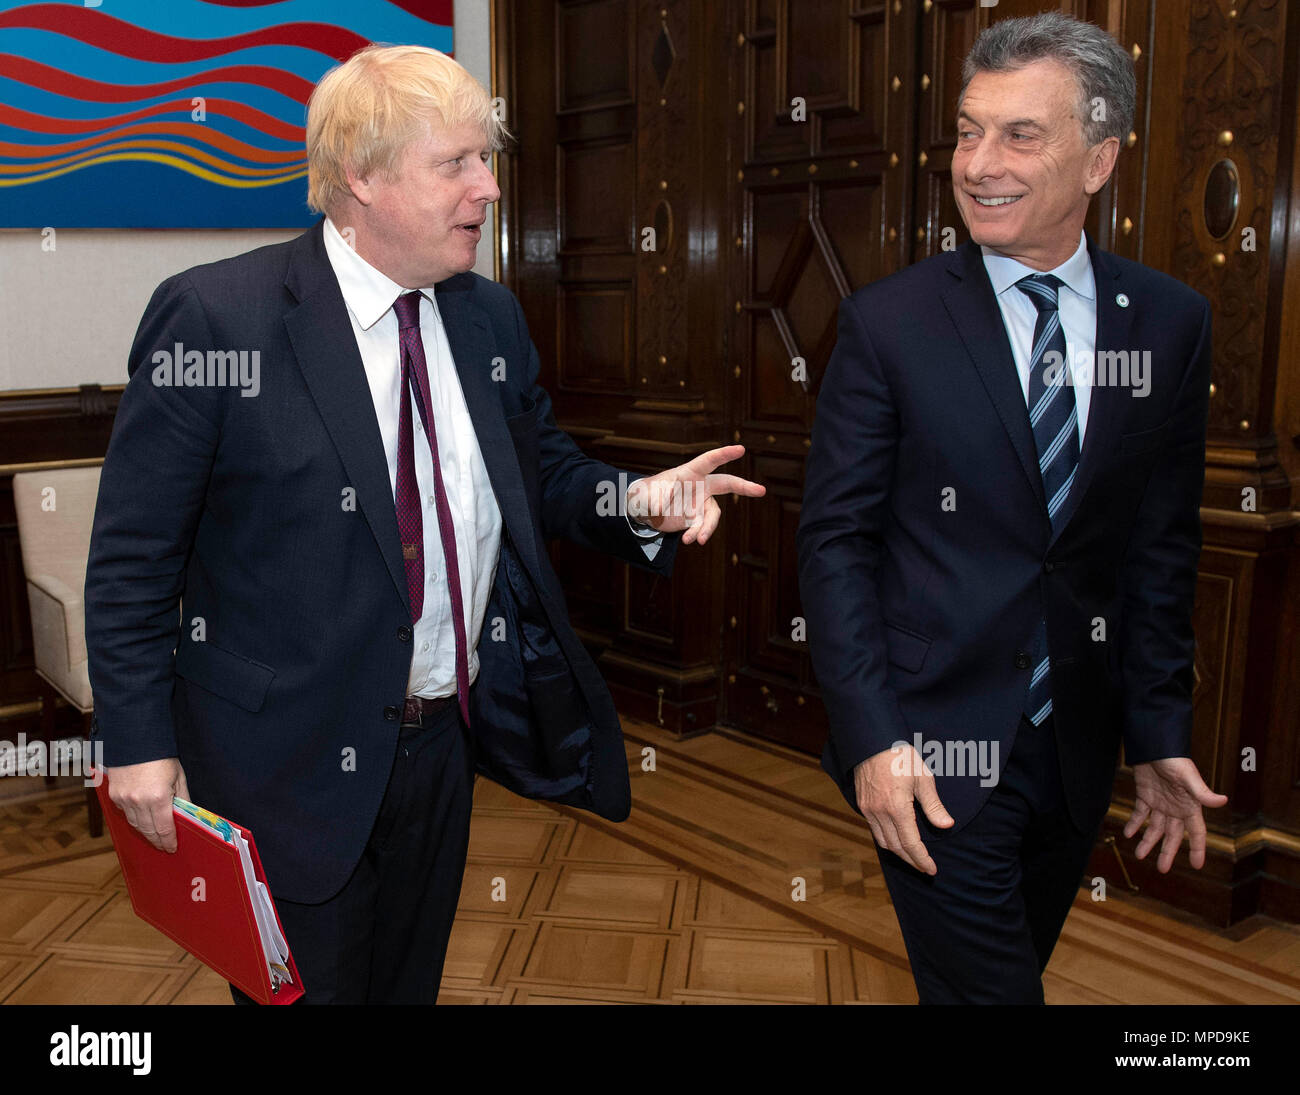 Secretaria de Relaciones Exteriores Boris Johnson se reúne con el Presidente de Argentina, Mauricio Macri en Buenos Aires, Argentina, durante los cinco días de gira por Latinoamérica. Foto de stock